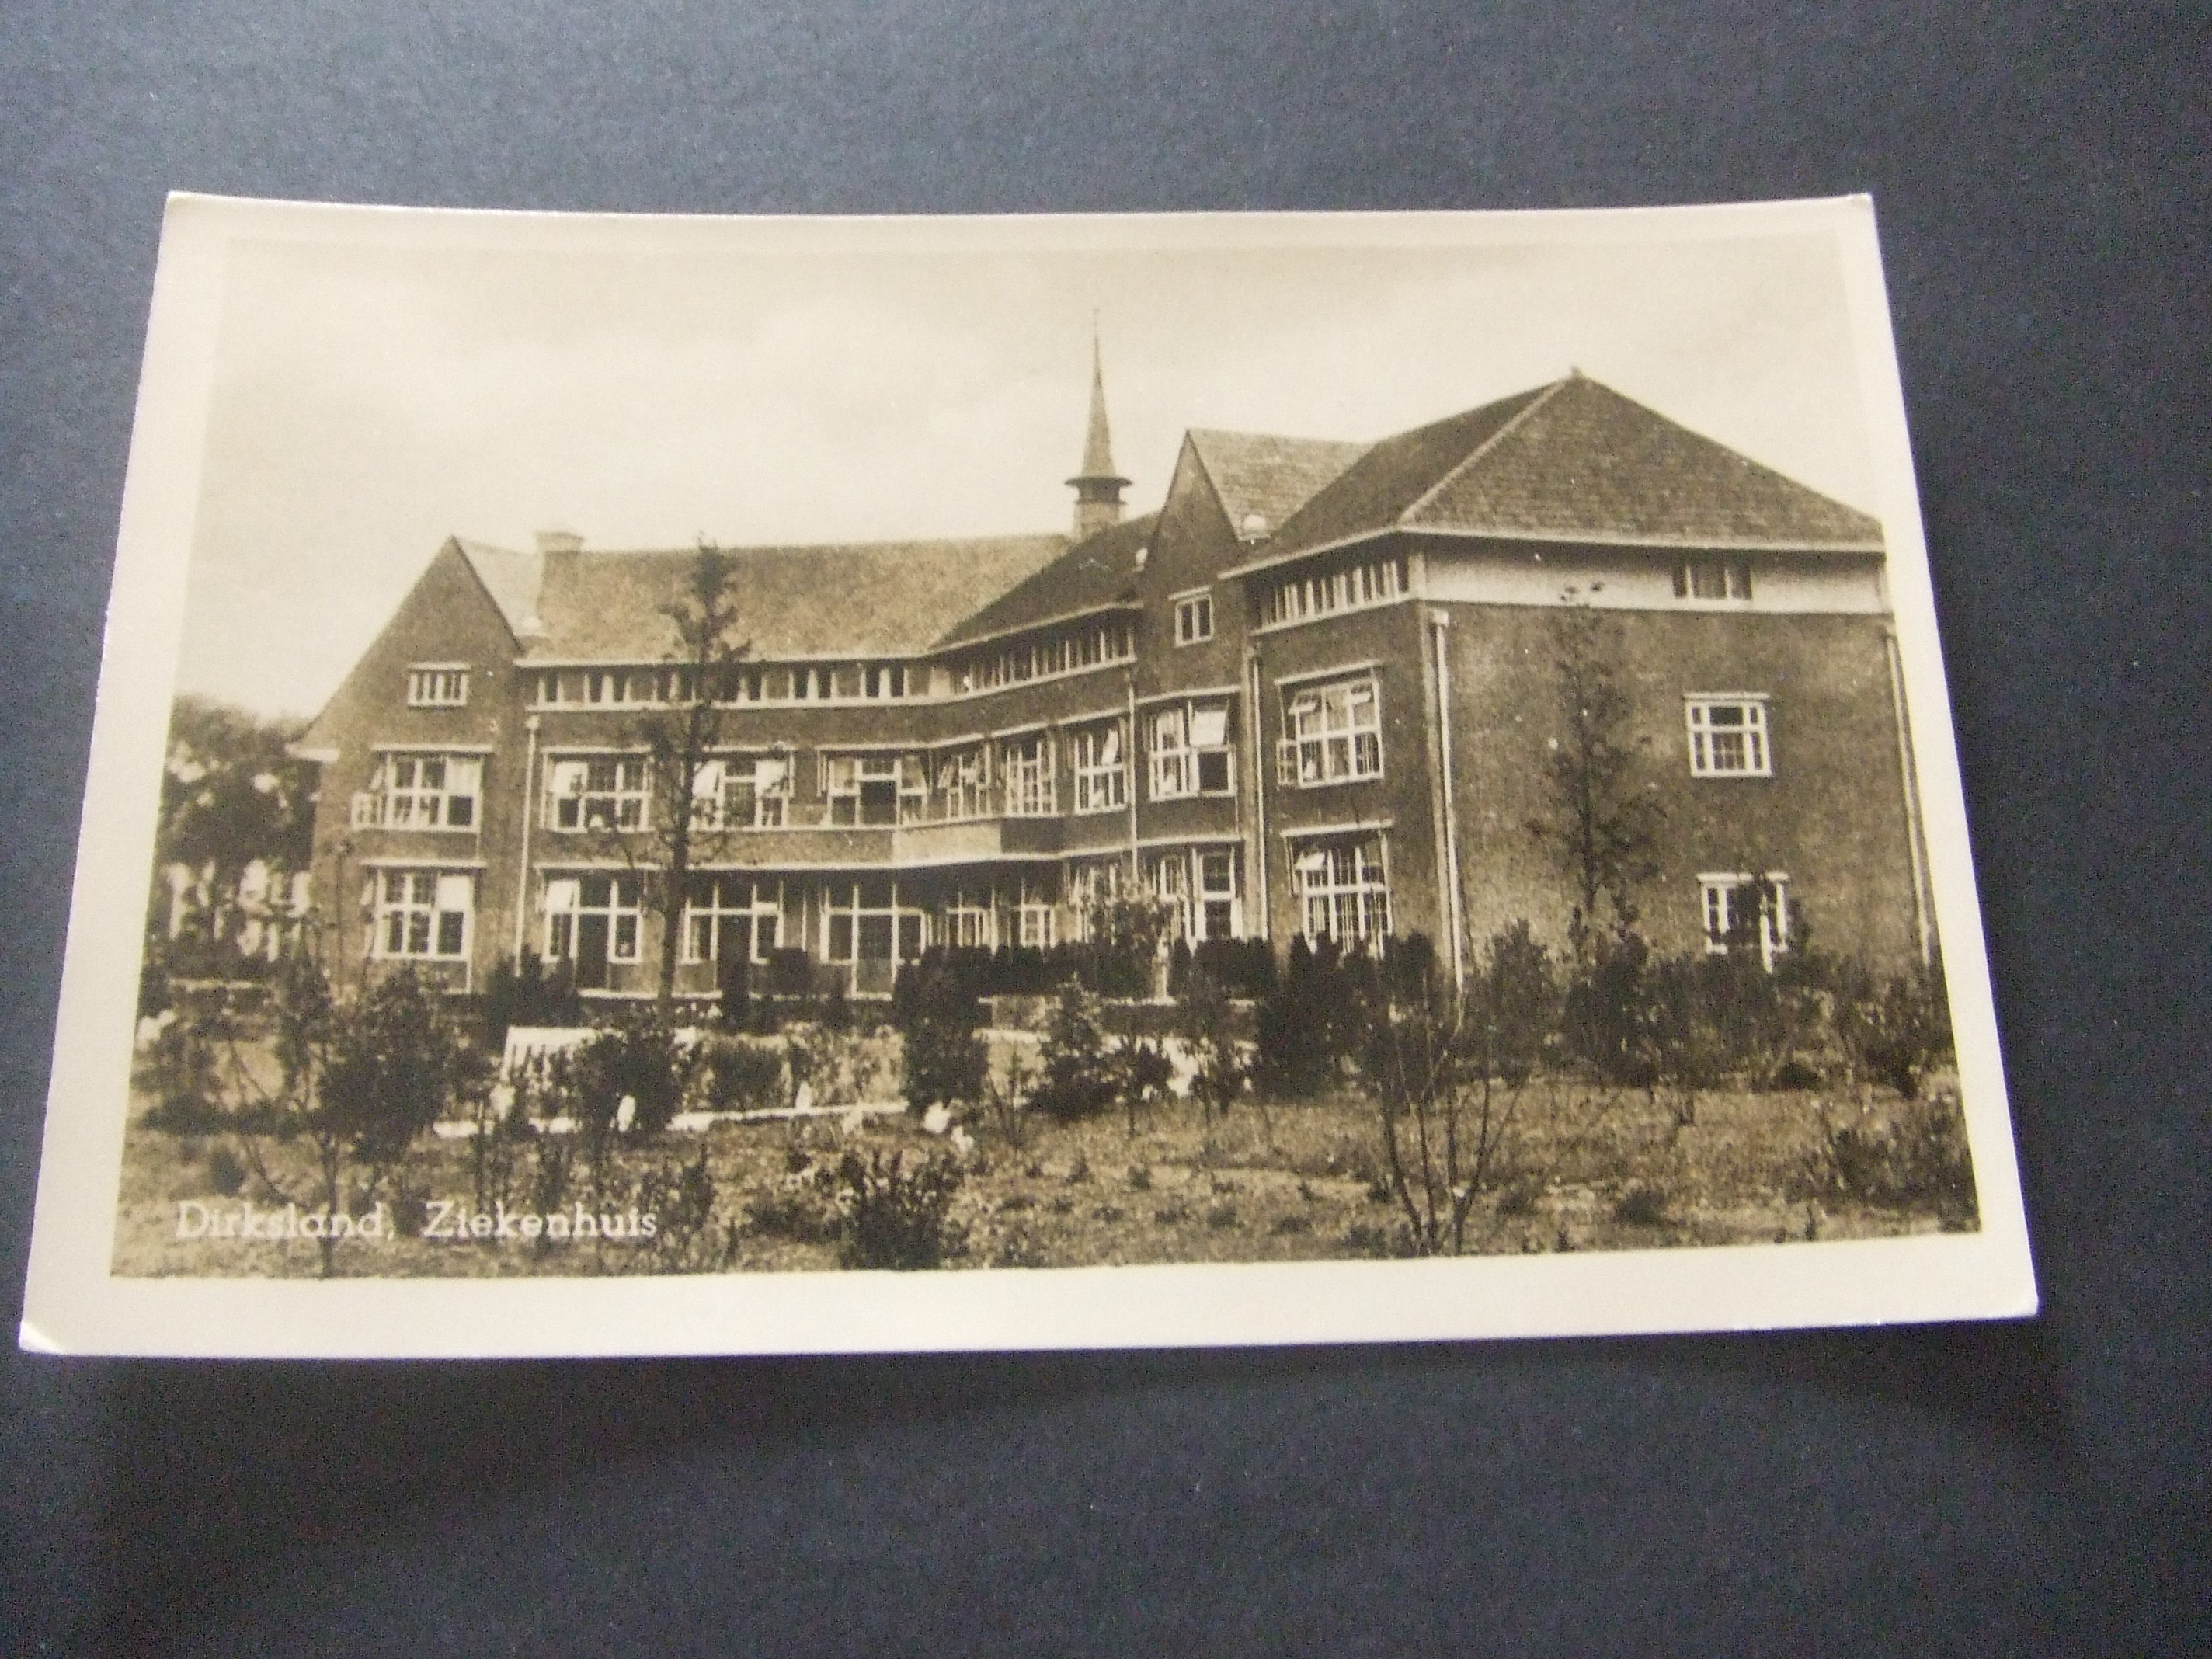 Dirksland oude ziekenhuis Bethesda